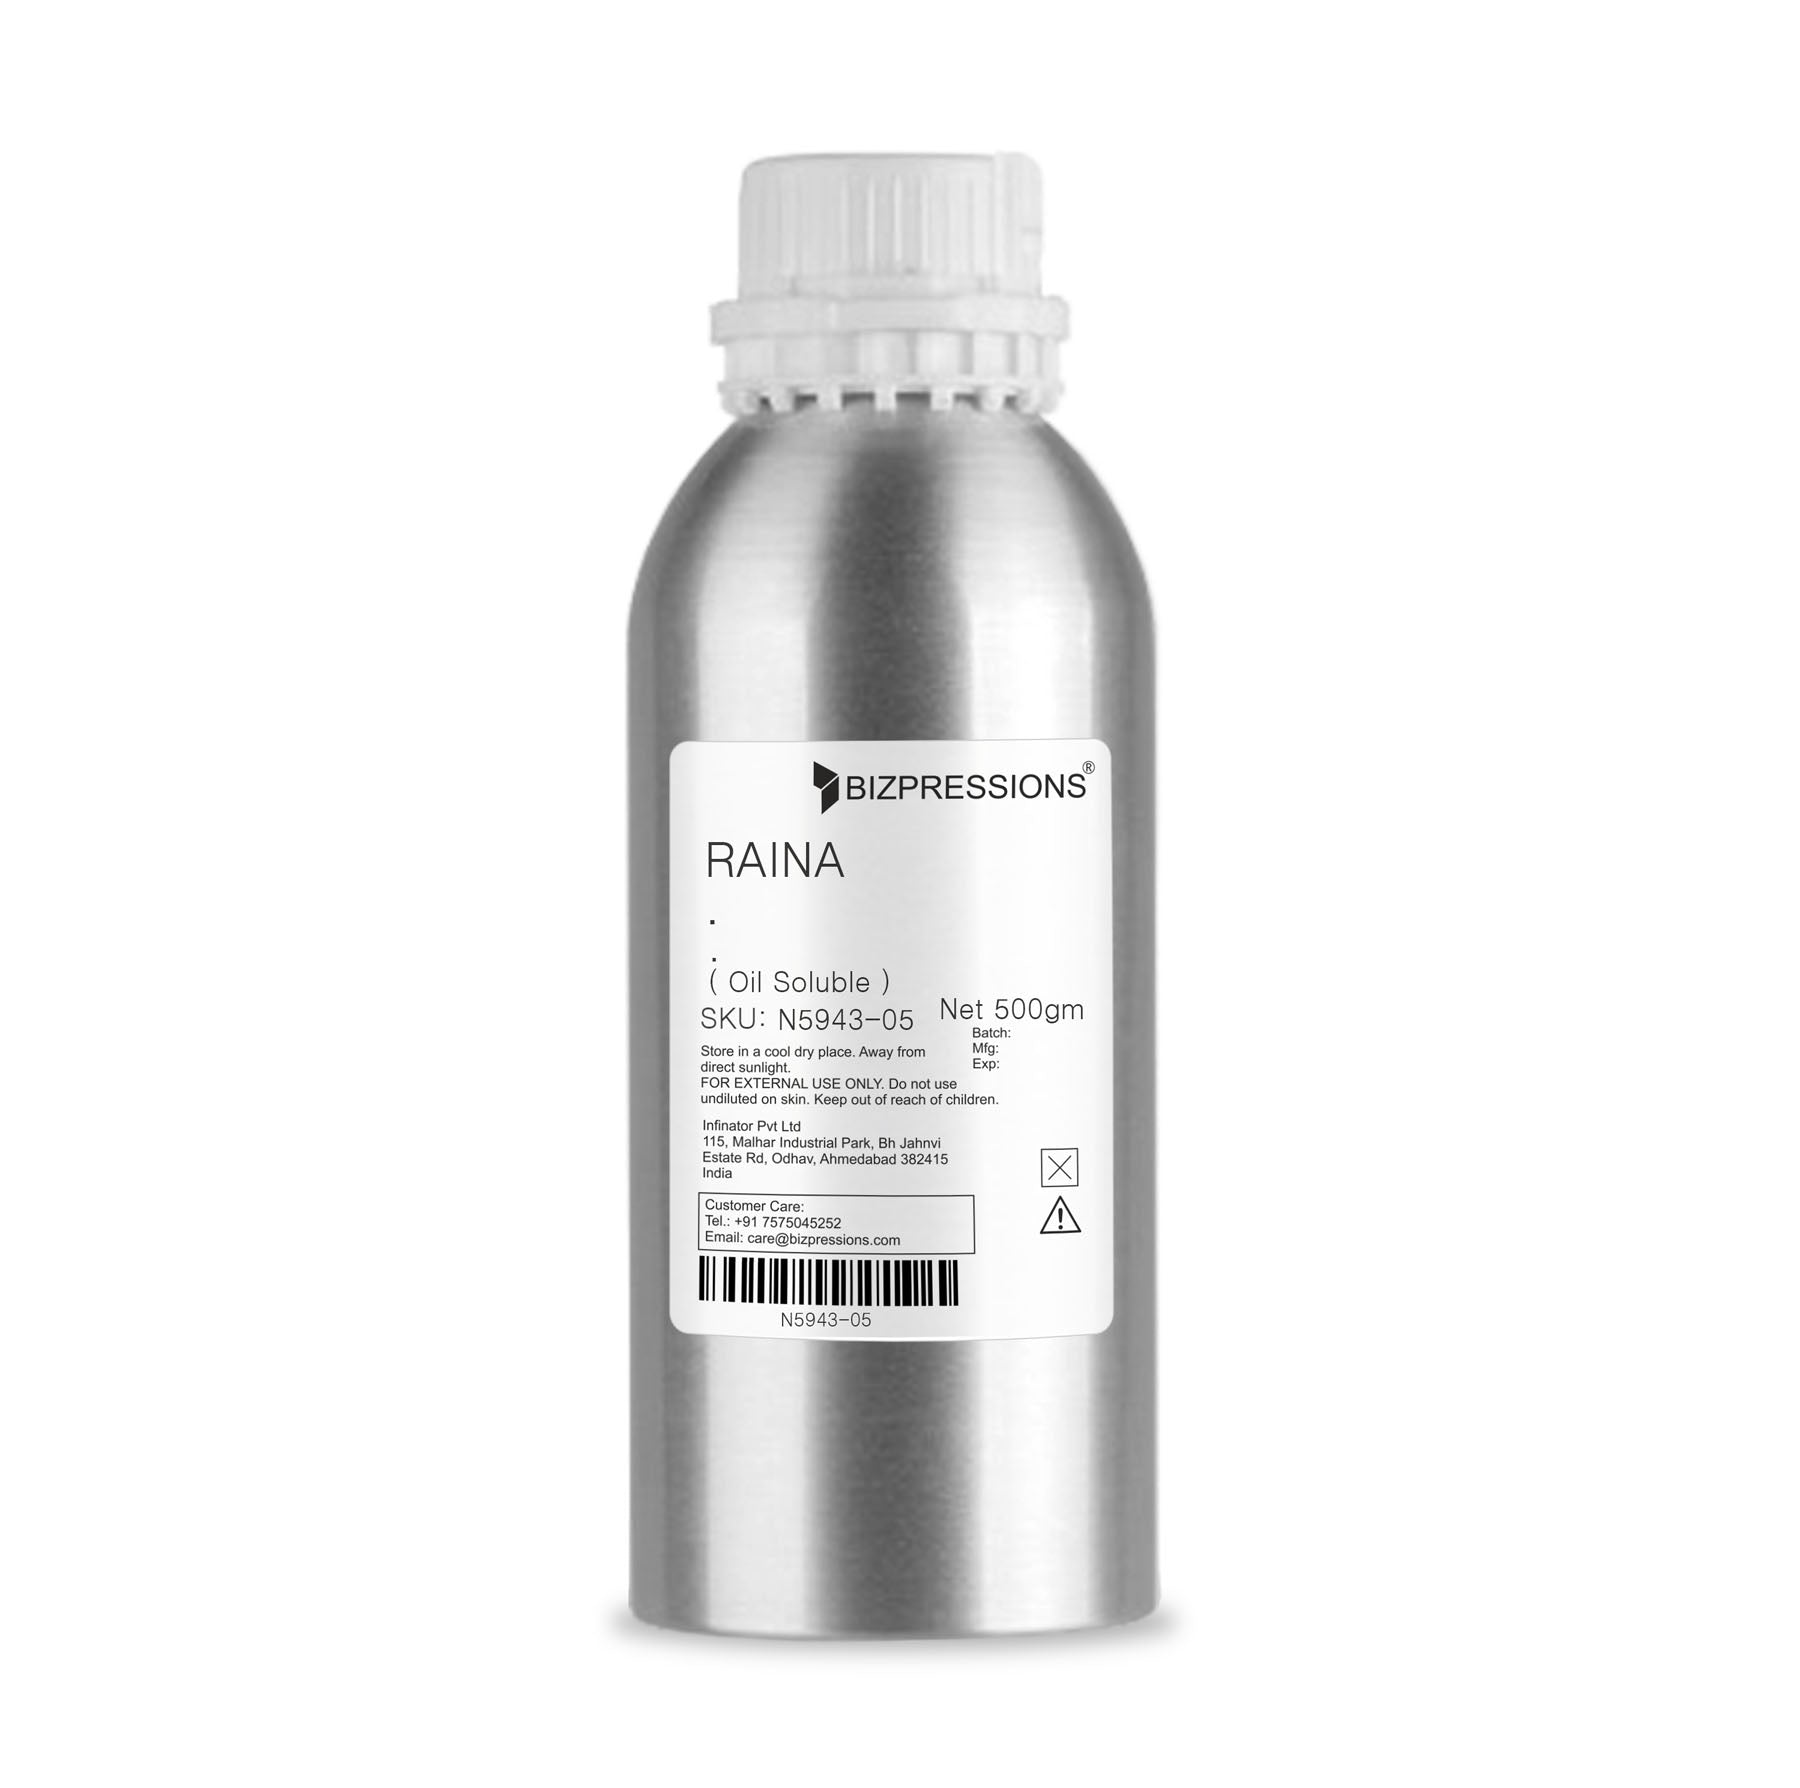 RAINA - Fragrance ( Oil Soluble ) - 500 gm